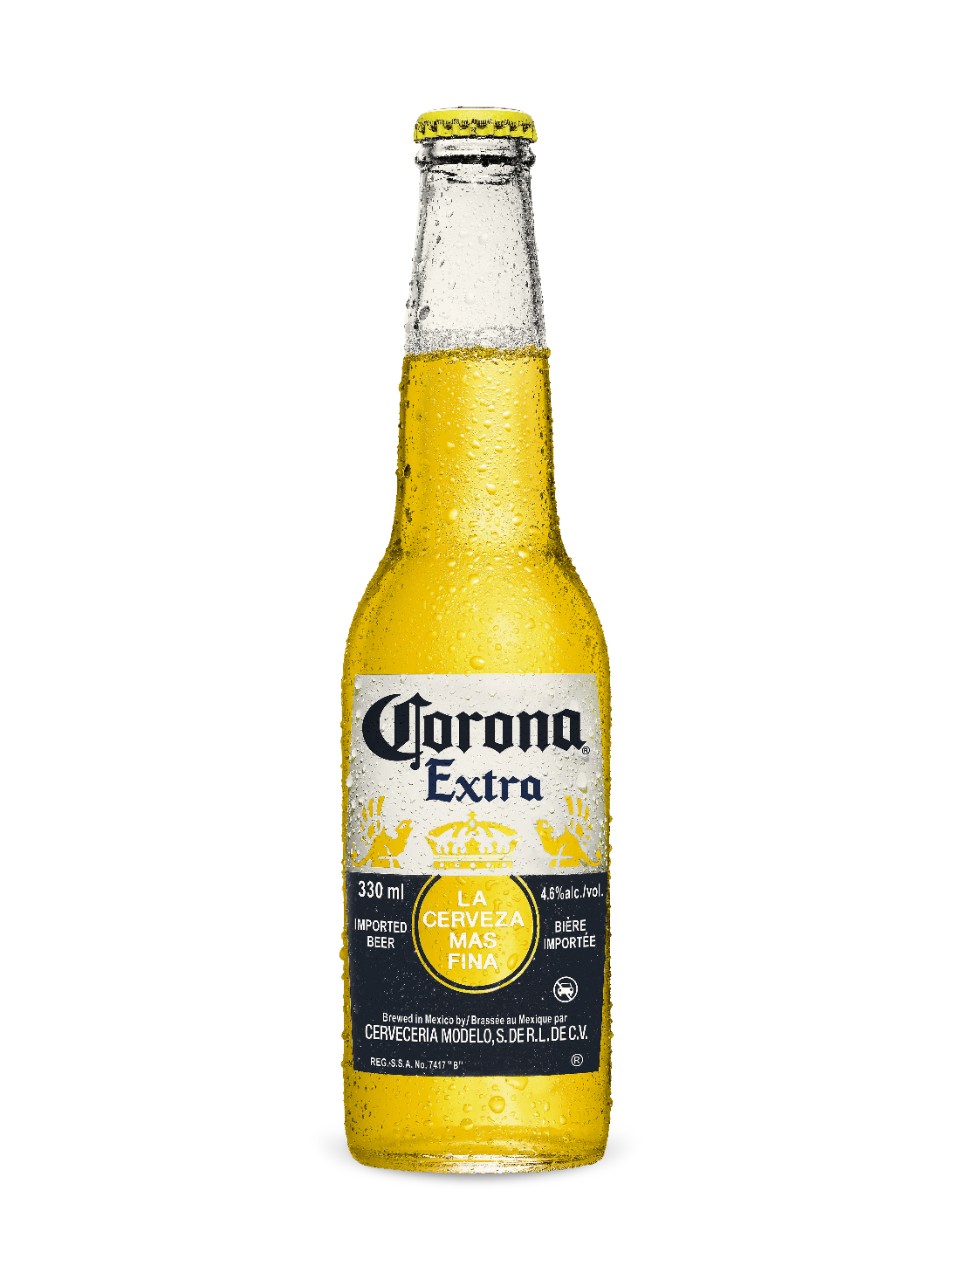 6. Corona Extra 